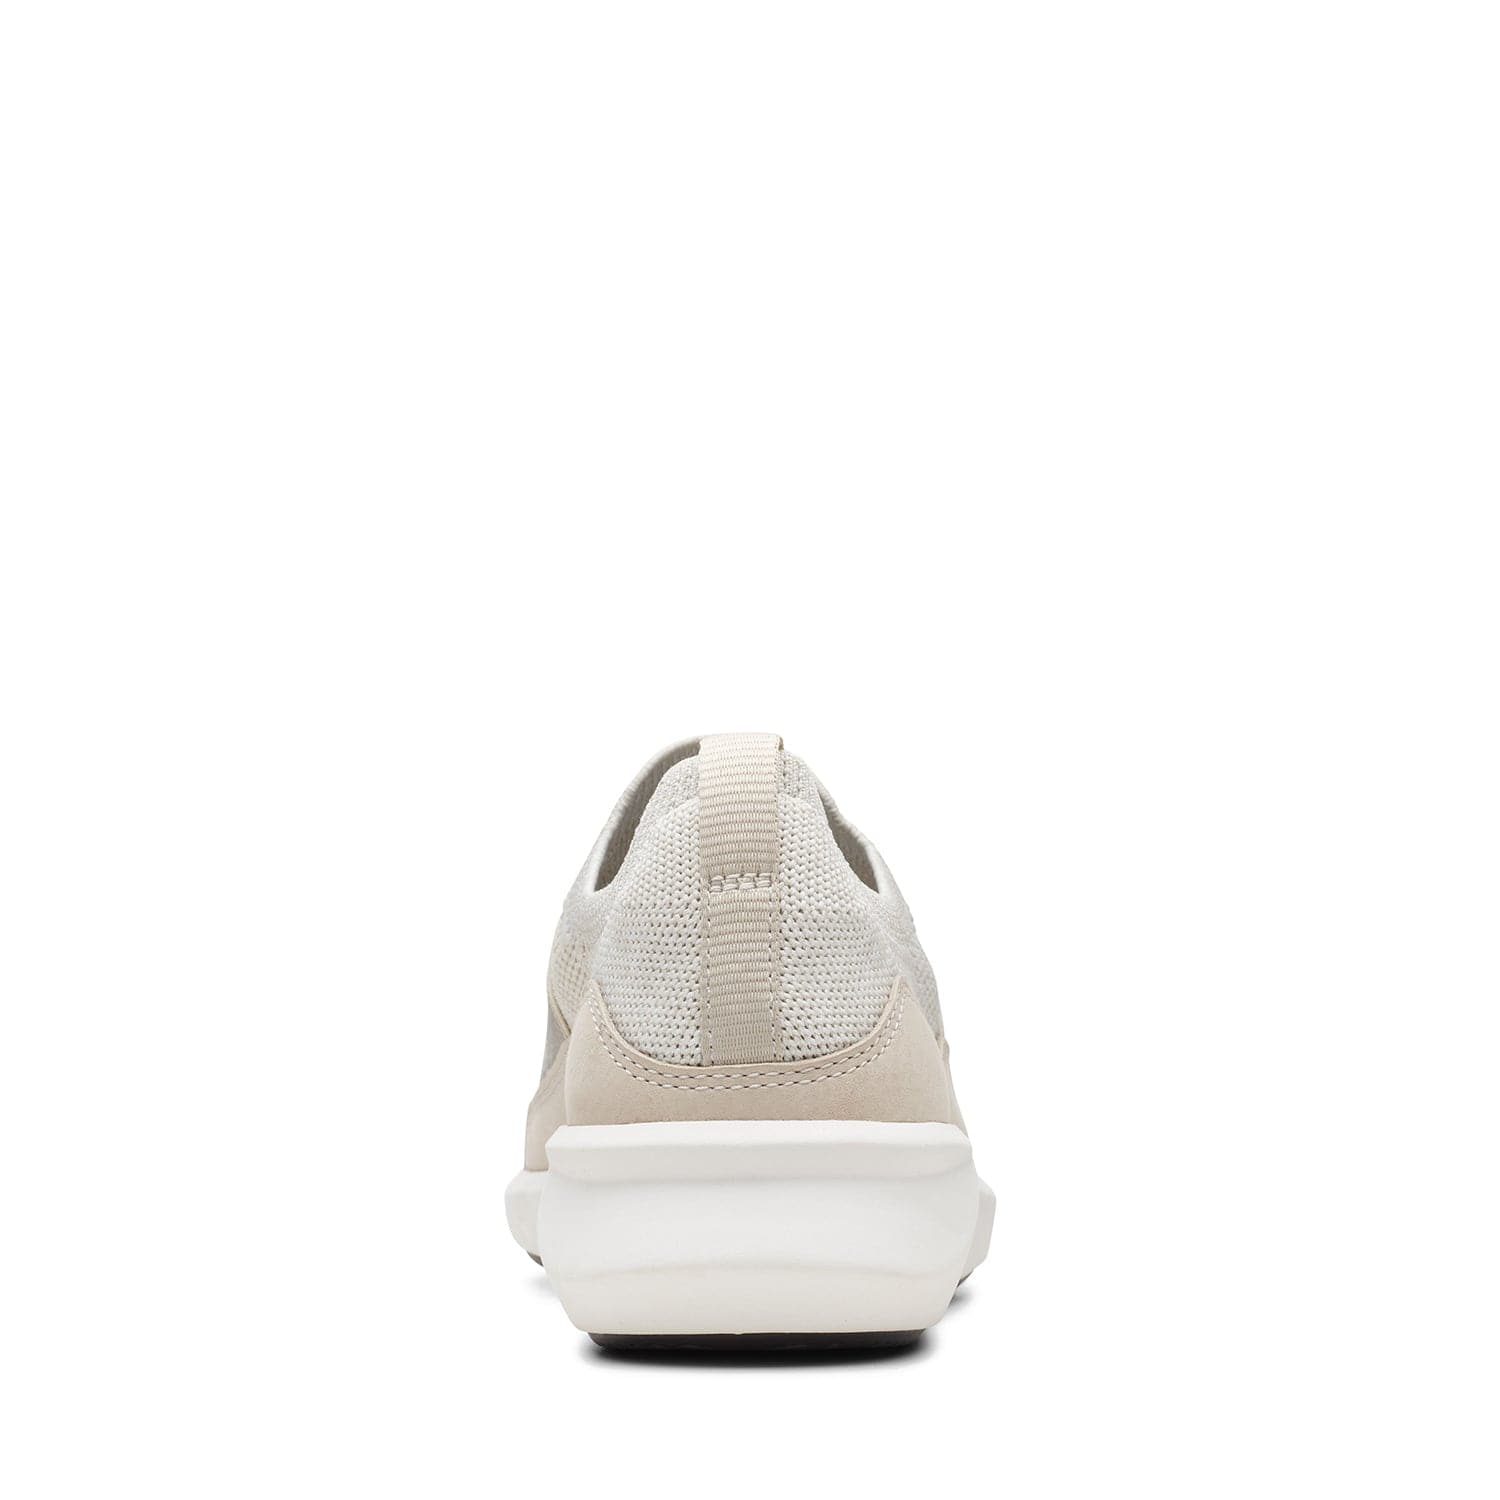 Clarks Un Rio Knit - Shoes - White Knit - 261655195 - E Width (Wide Fit)